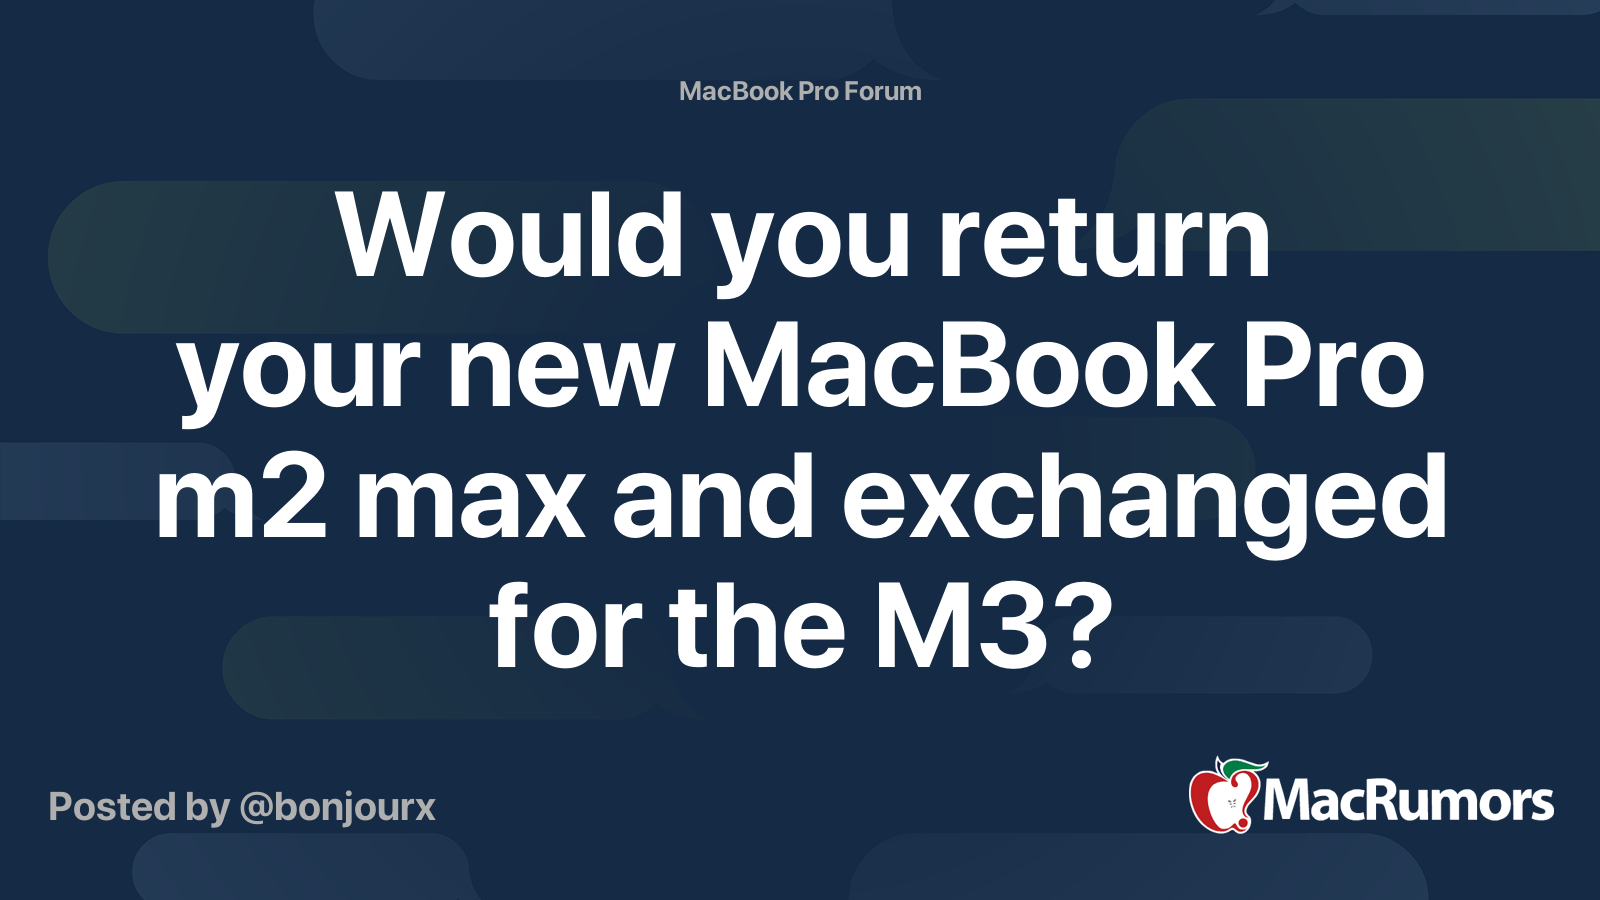 Dois-je opter pour le nouveau M3 ou un Macbook pro M2 Pro reconditionné ? :  r/mac